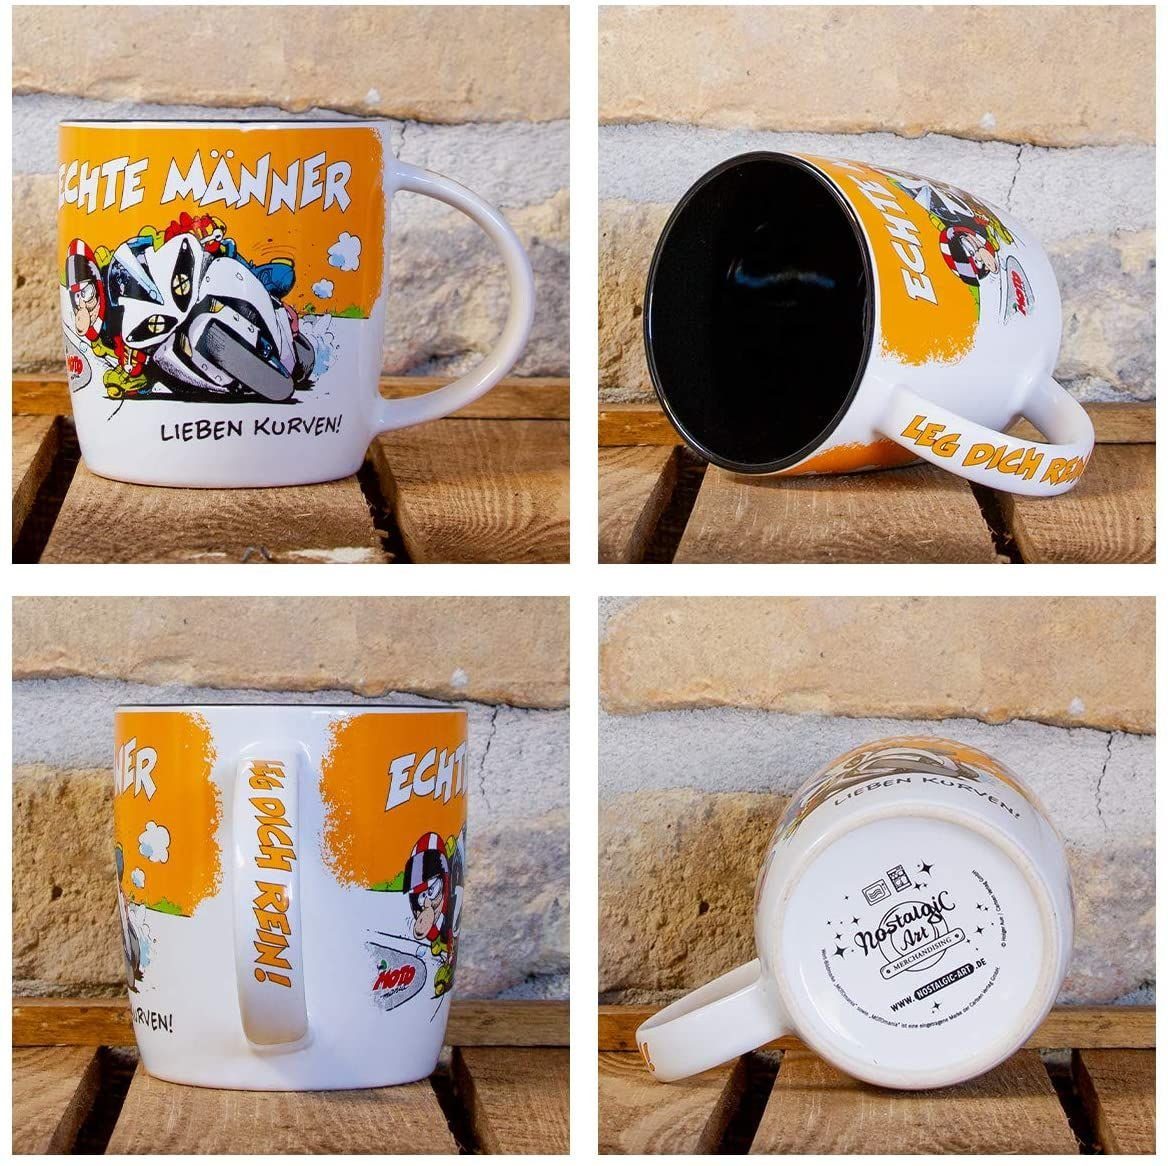 Nostalgic-Art Tasse Kaffeetasse - MOTOmania Kurven! Echte - Männer lieben